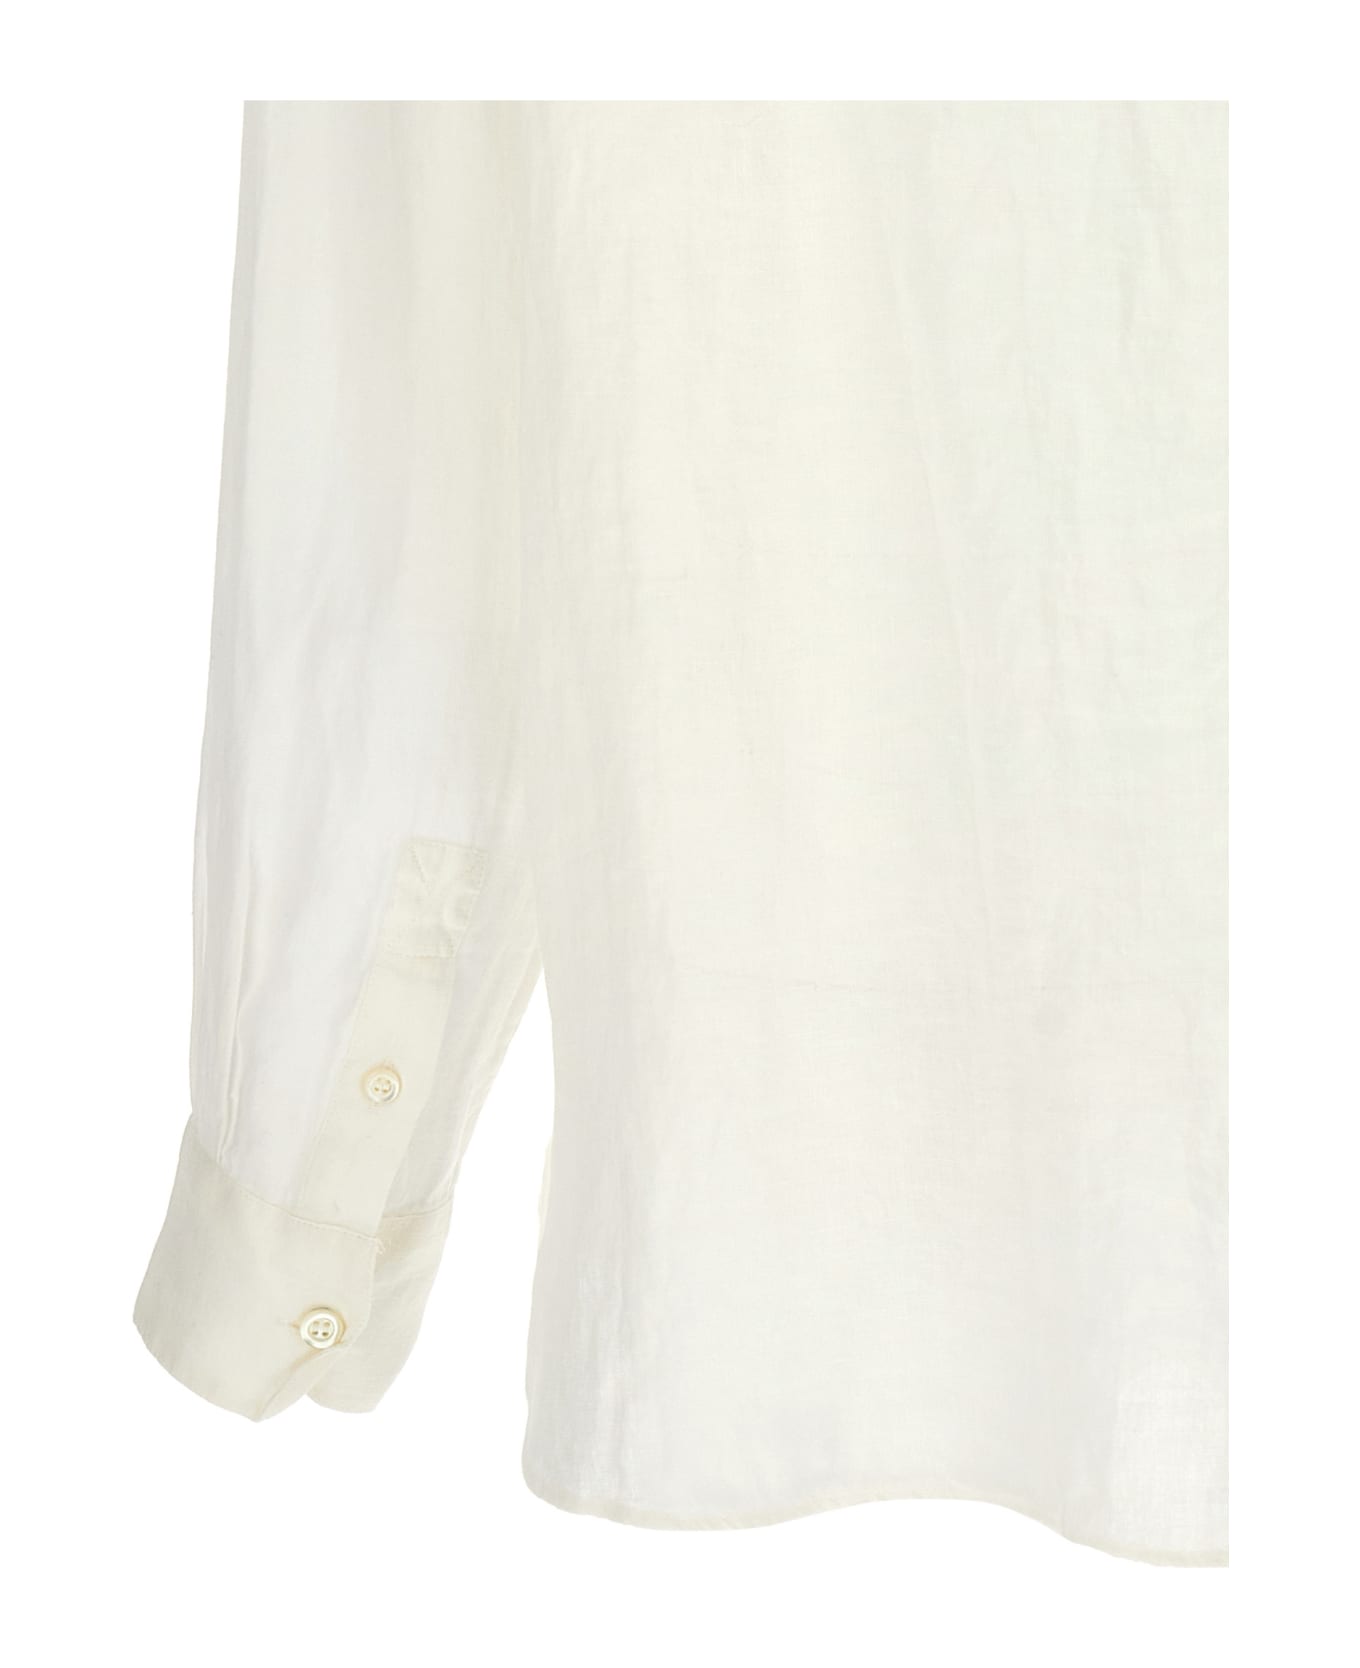 A.P.C. Sela Linen Shirt - Aac Off White